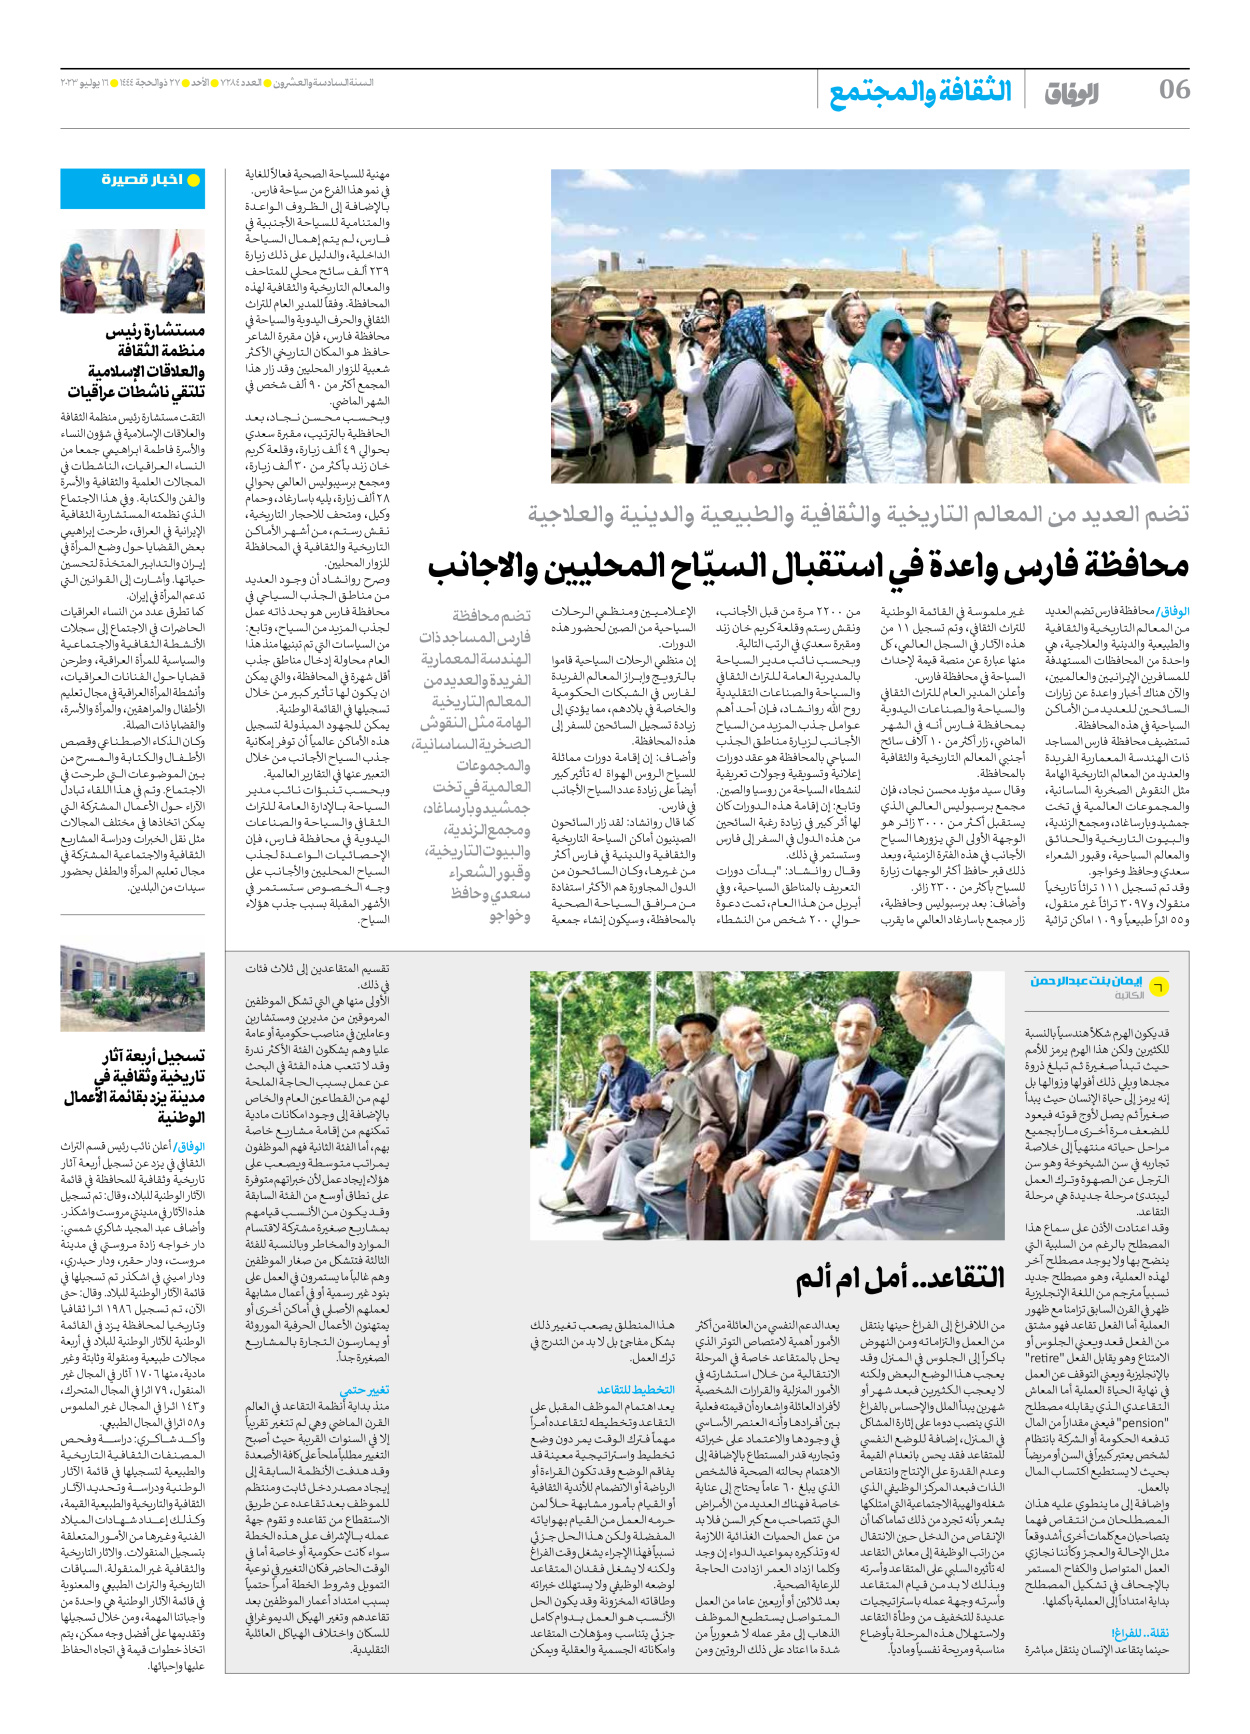 صحیفة ایران الدولیة الوفاق - العدد سبعة آلاف ومائتان وأربعة وثمانون - ١٦ يوليو ٢٠٢٣ - الصفحة ٦